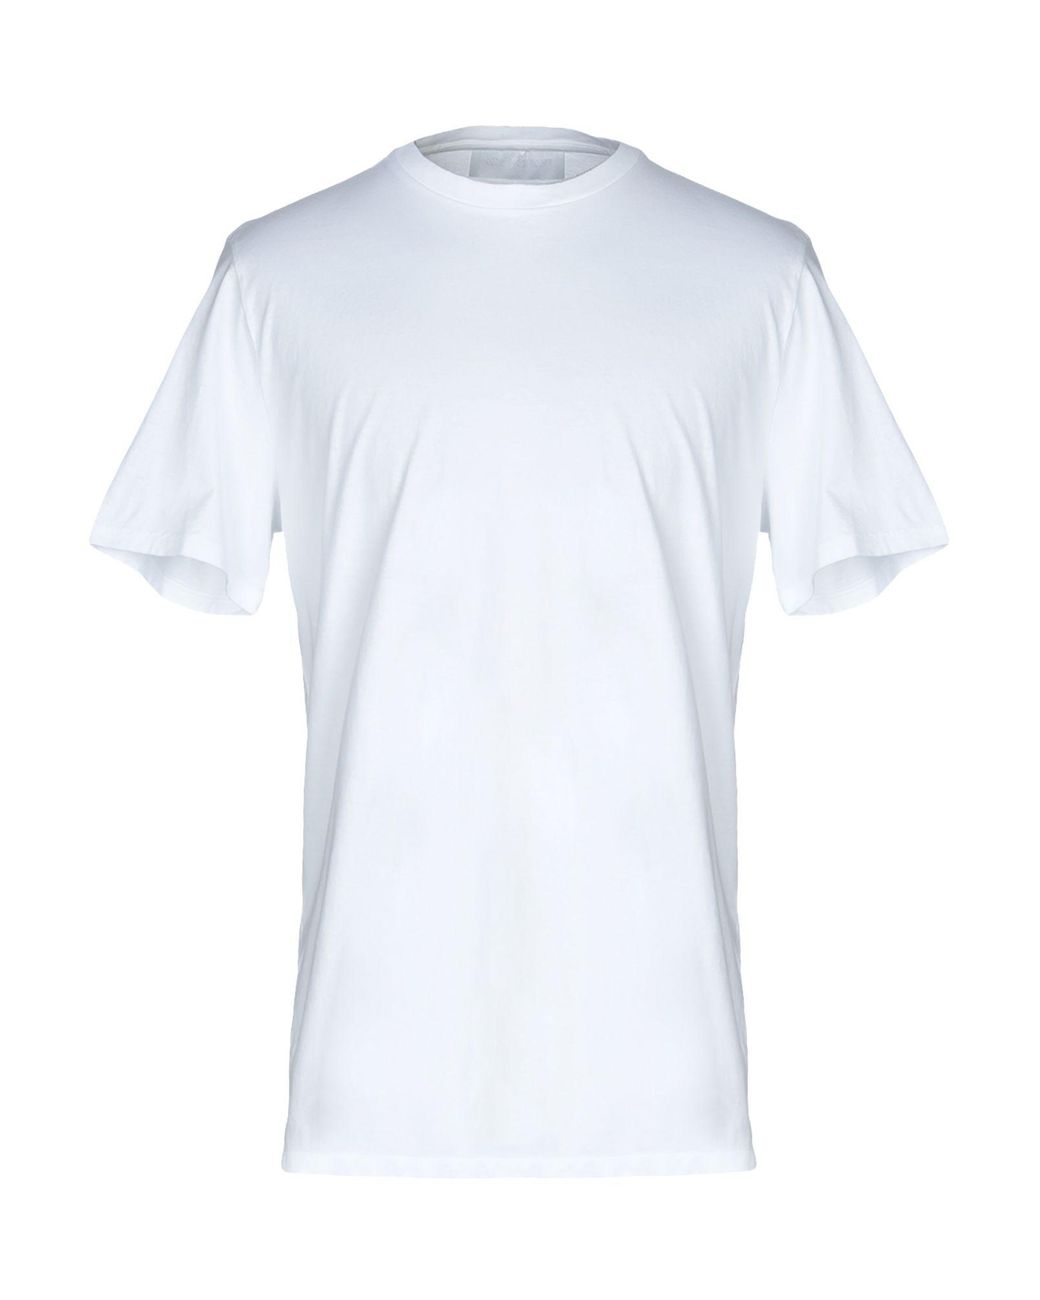 Neil Barrett T-shirt in White for Men - Lyst